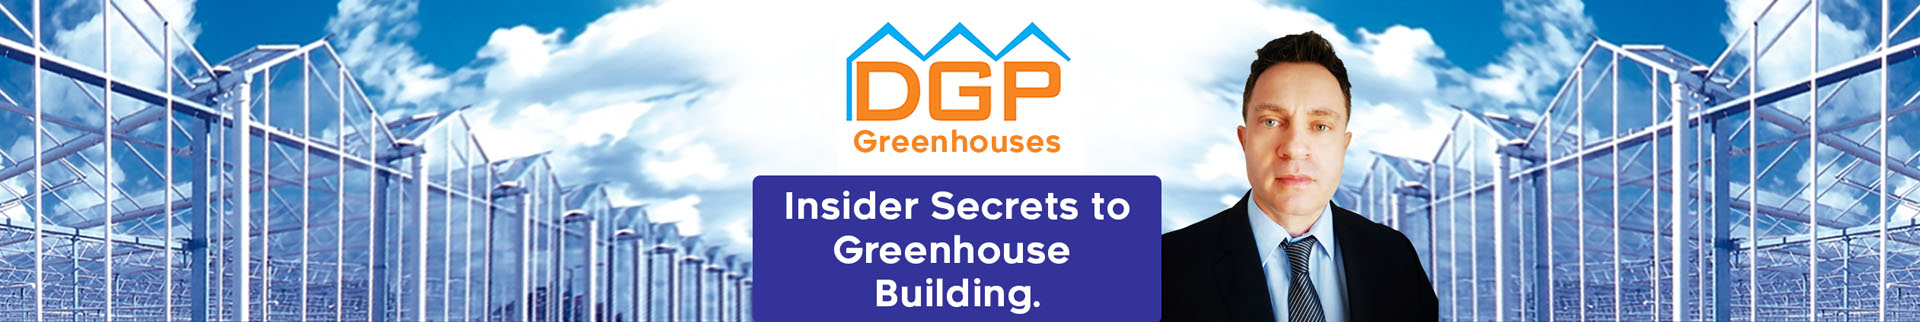 DGP Greenhouses